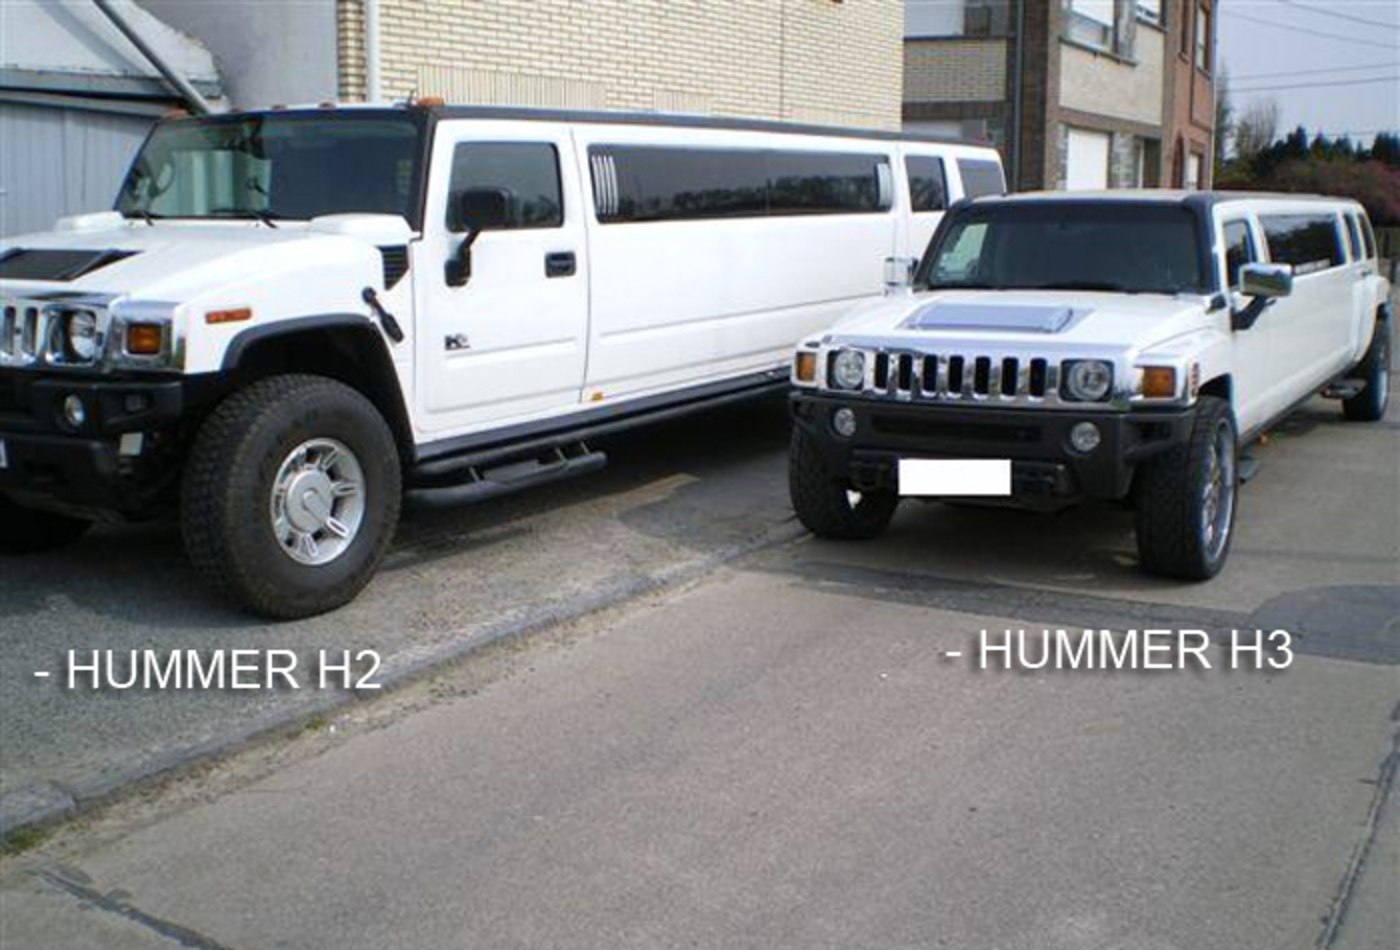 Hummer H3 Limousine (8MÃTRES)